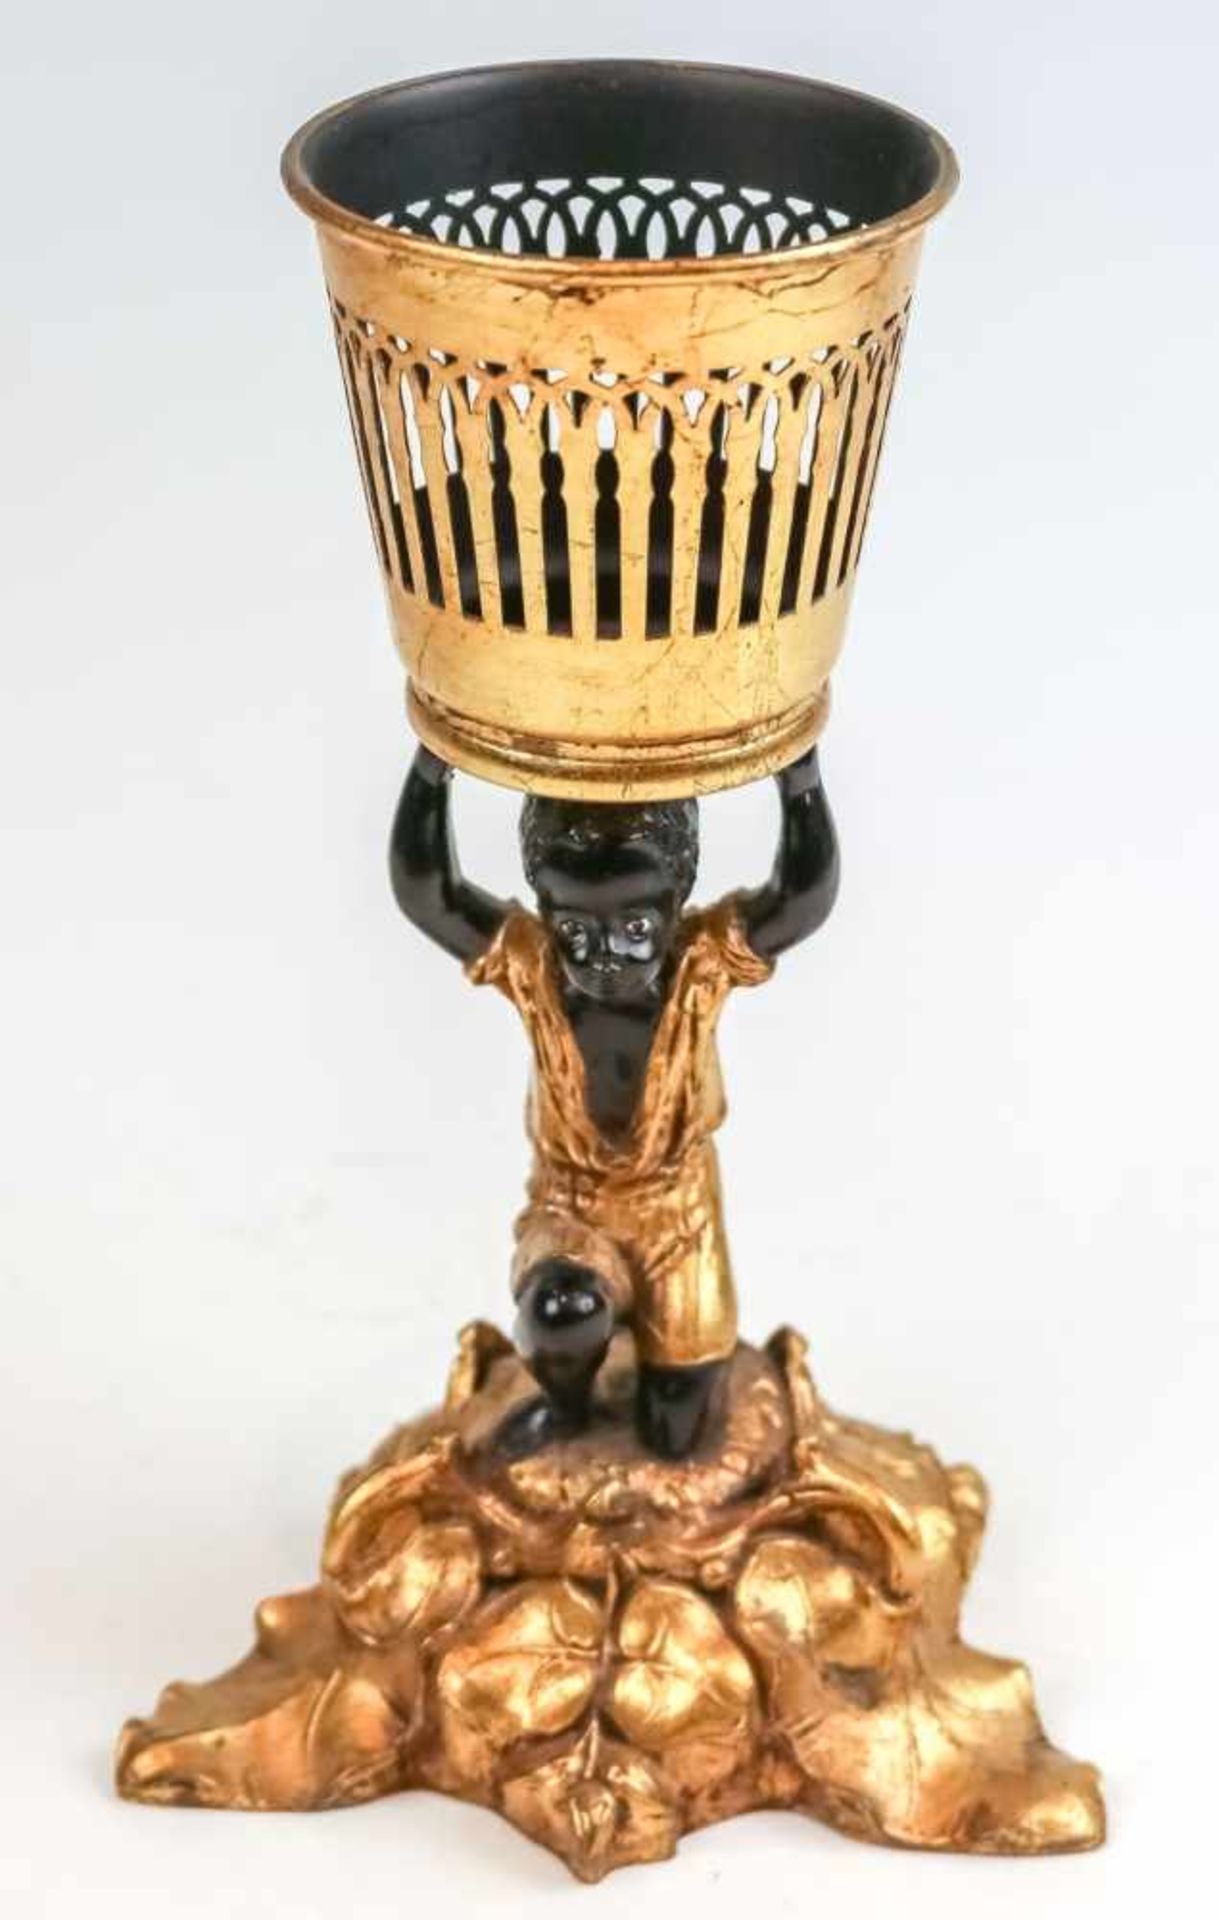 Korbträger au Nègre20. Jh.Gußmasse und Eisenblech, teilvergoldet und schwarz lackiert. Sitzender